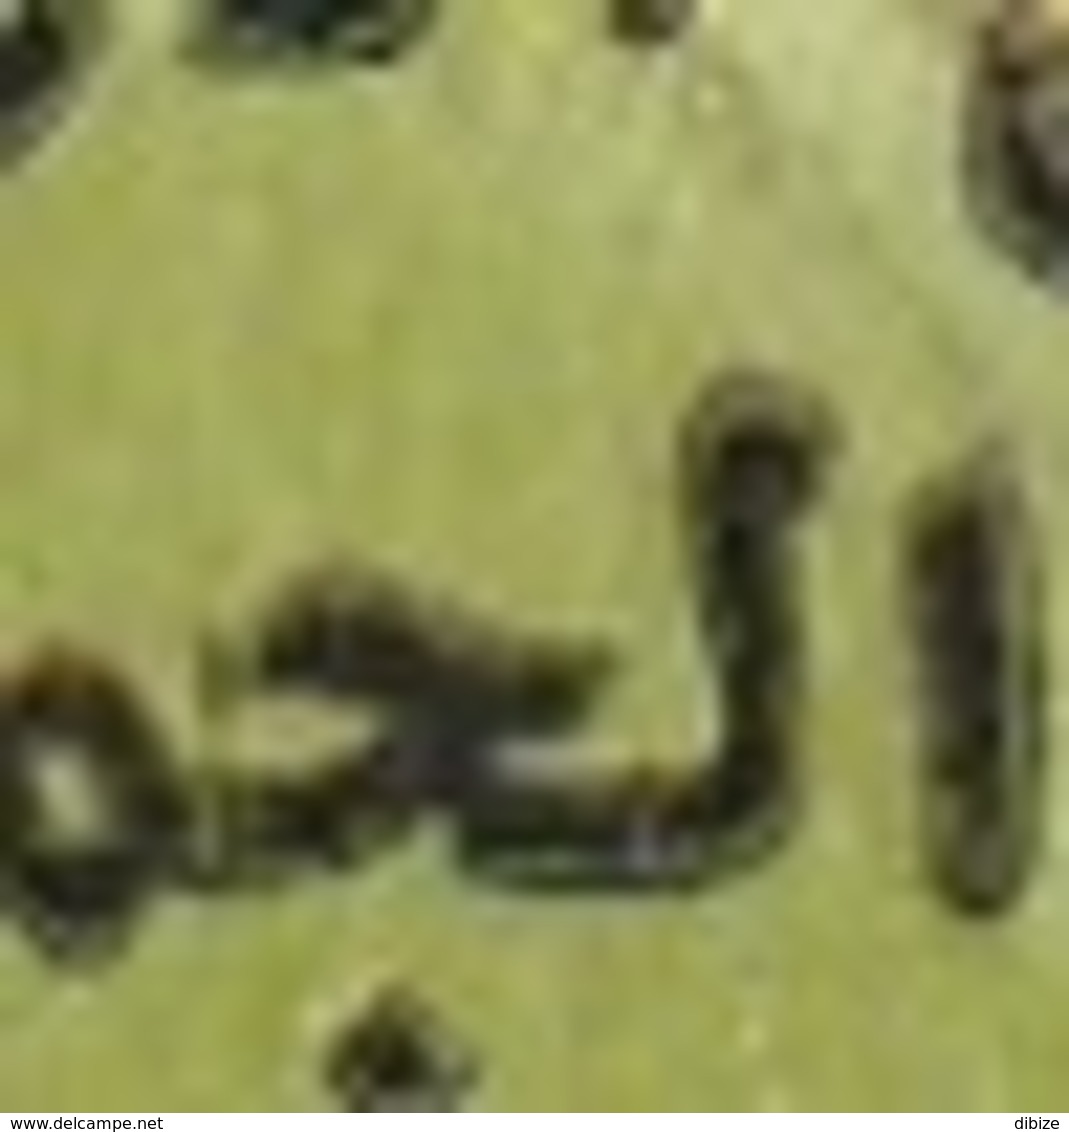 Maroc. Coin Daté De 6 Timbres, Poste Aérienne Yvert N° 124 De 1987. Surcharge Arabe. Variétés. Erreurs. - Fehldrucke